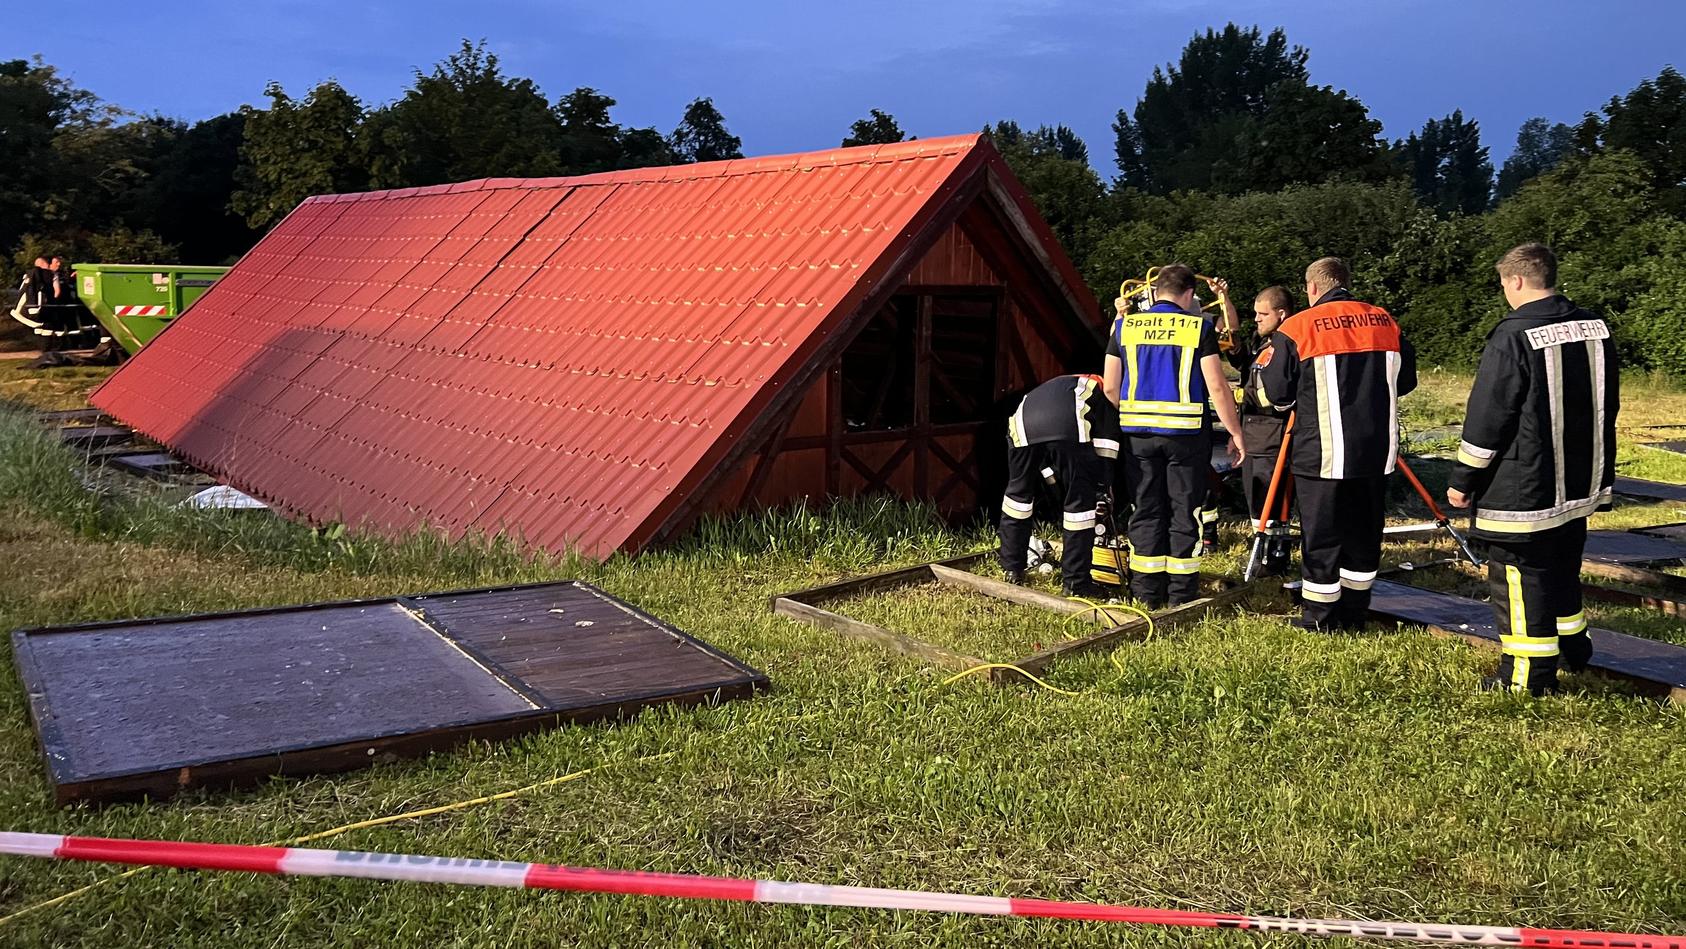 20.05.2022, Bayern, Spalt: Beim Einsturz einer Holzhütte bei einem Unwetter in Mittelfranken sind 14 Menschen verletzt worden, darunter  mehrere Kinder. Eine 37 Jahre alte Frau sei mit schwersten Verletzungen in eine Klinik geflogen worden, sagte ein